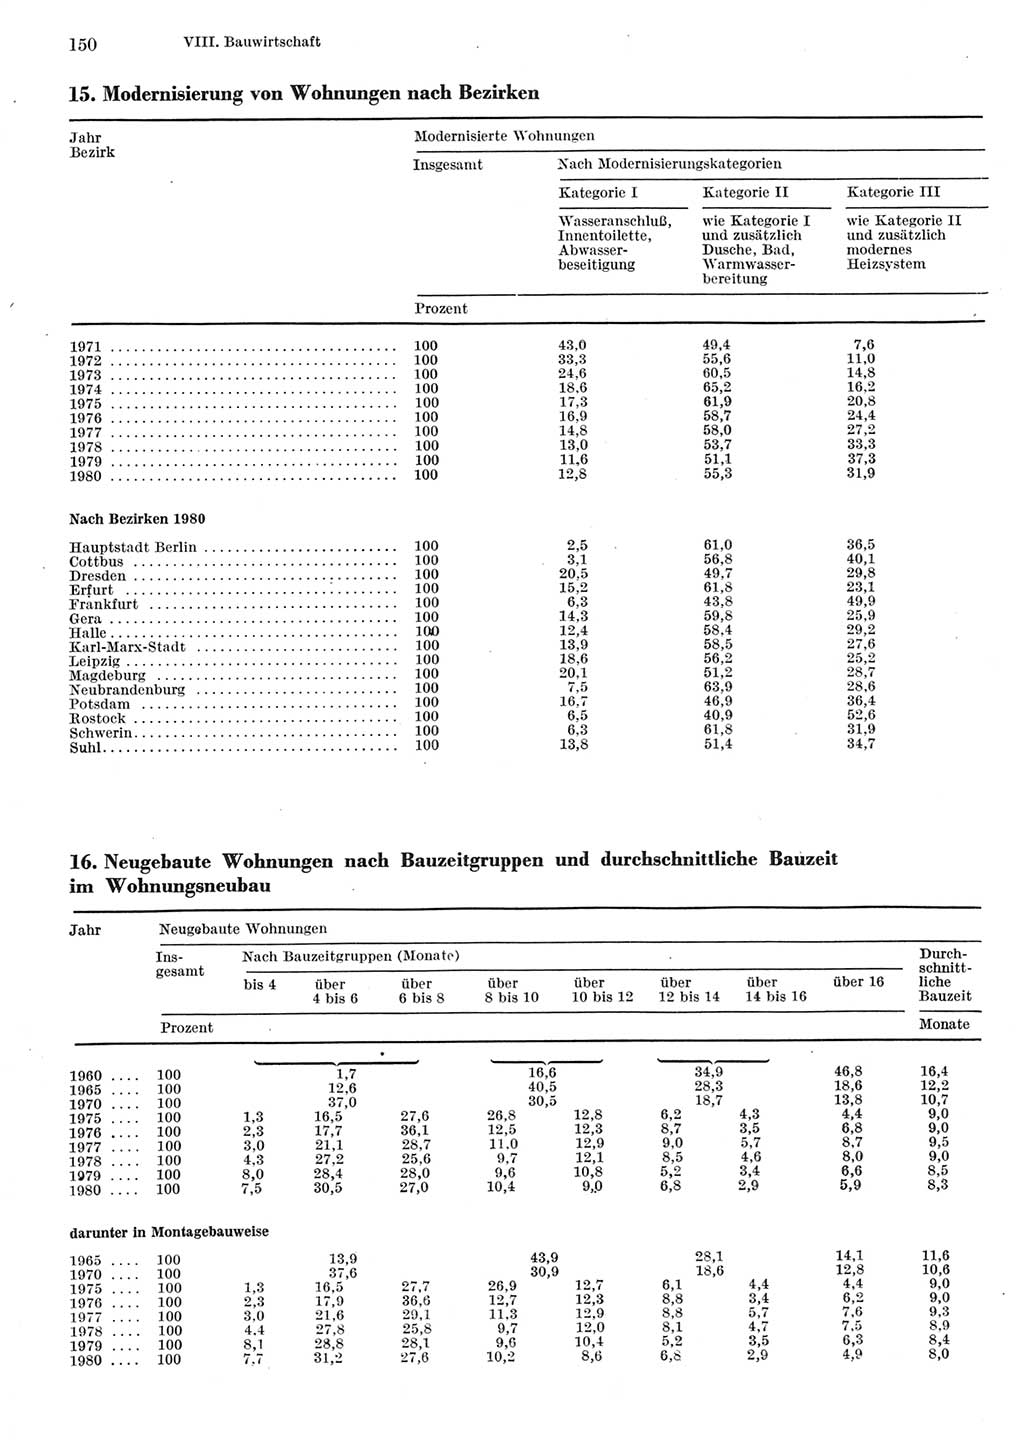 Statistisches Jahrbuch der Deutschen Demokratischen Republik (DDR) 1981, Seite 150 (Stat. Jb. DDR 1981, S. 150)